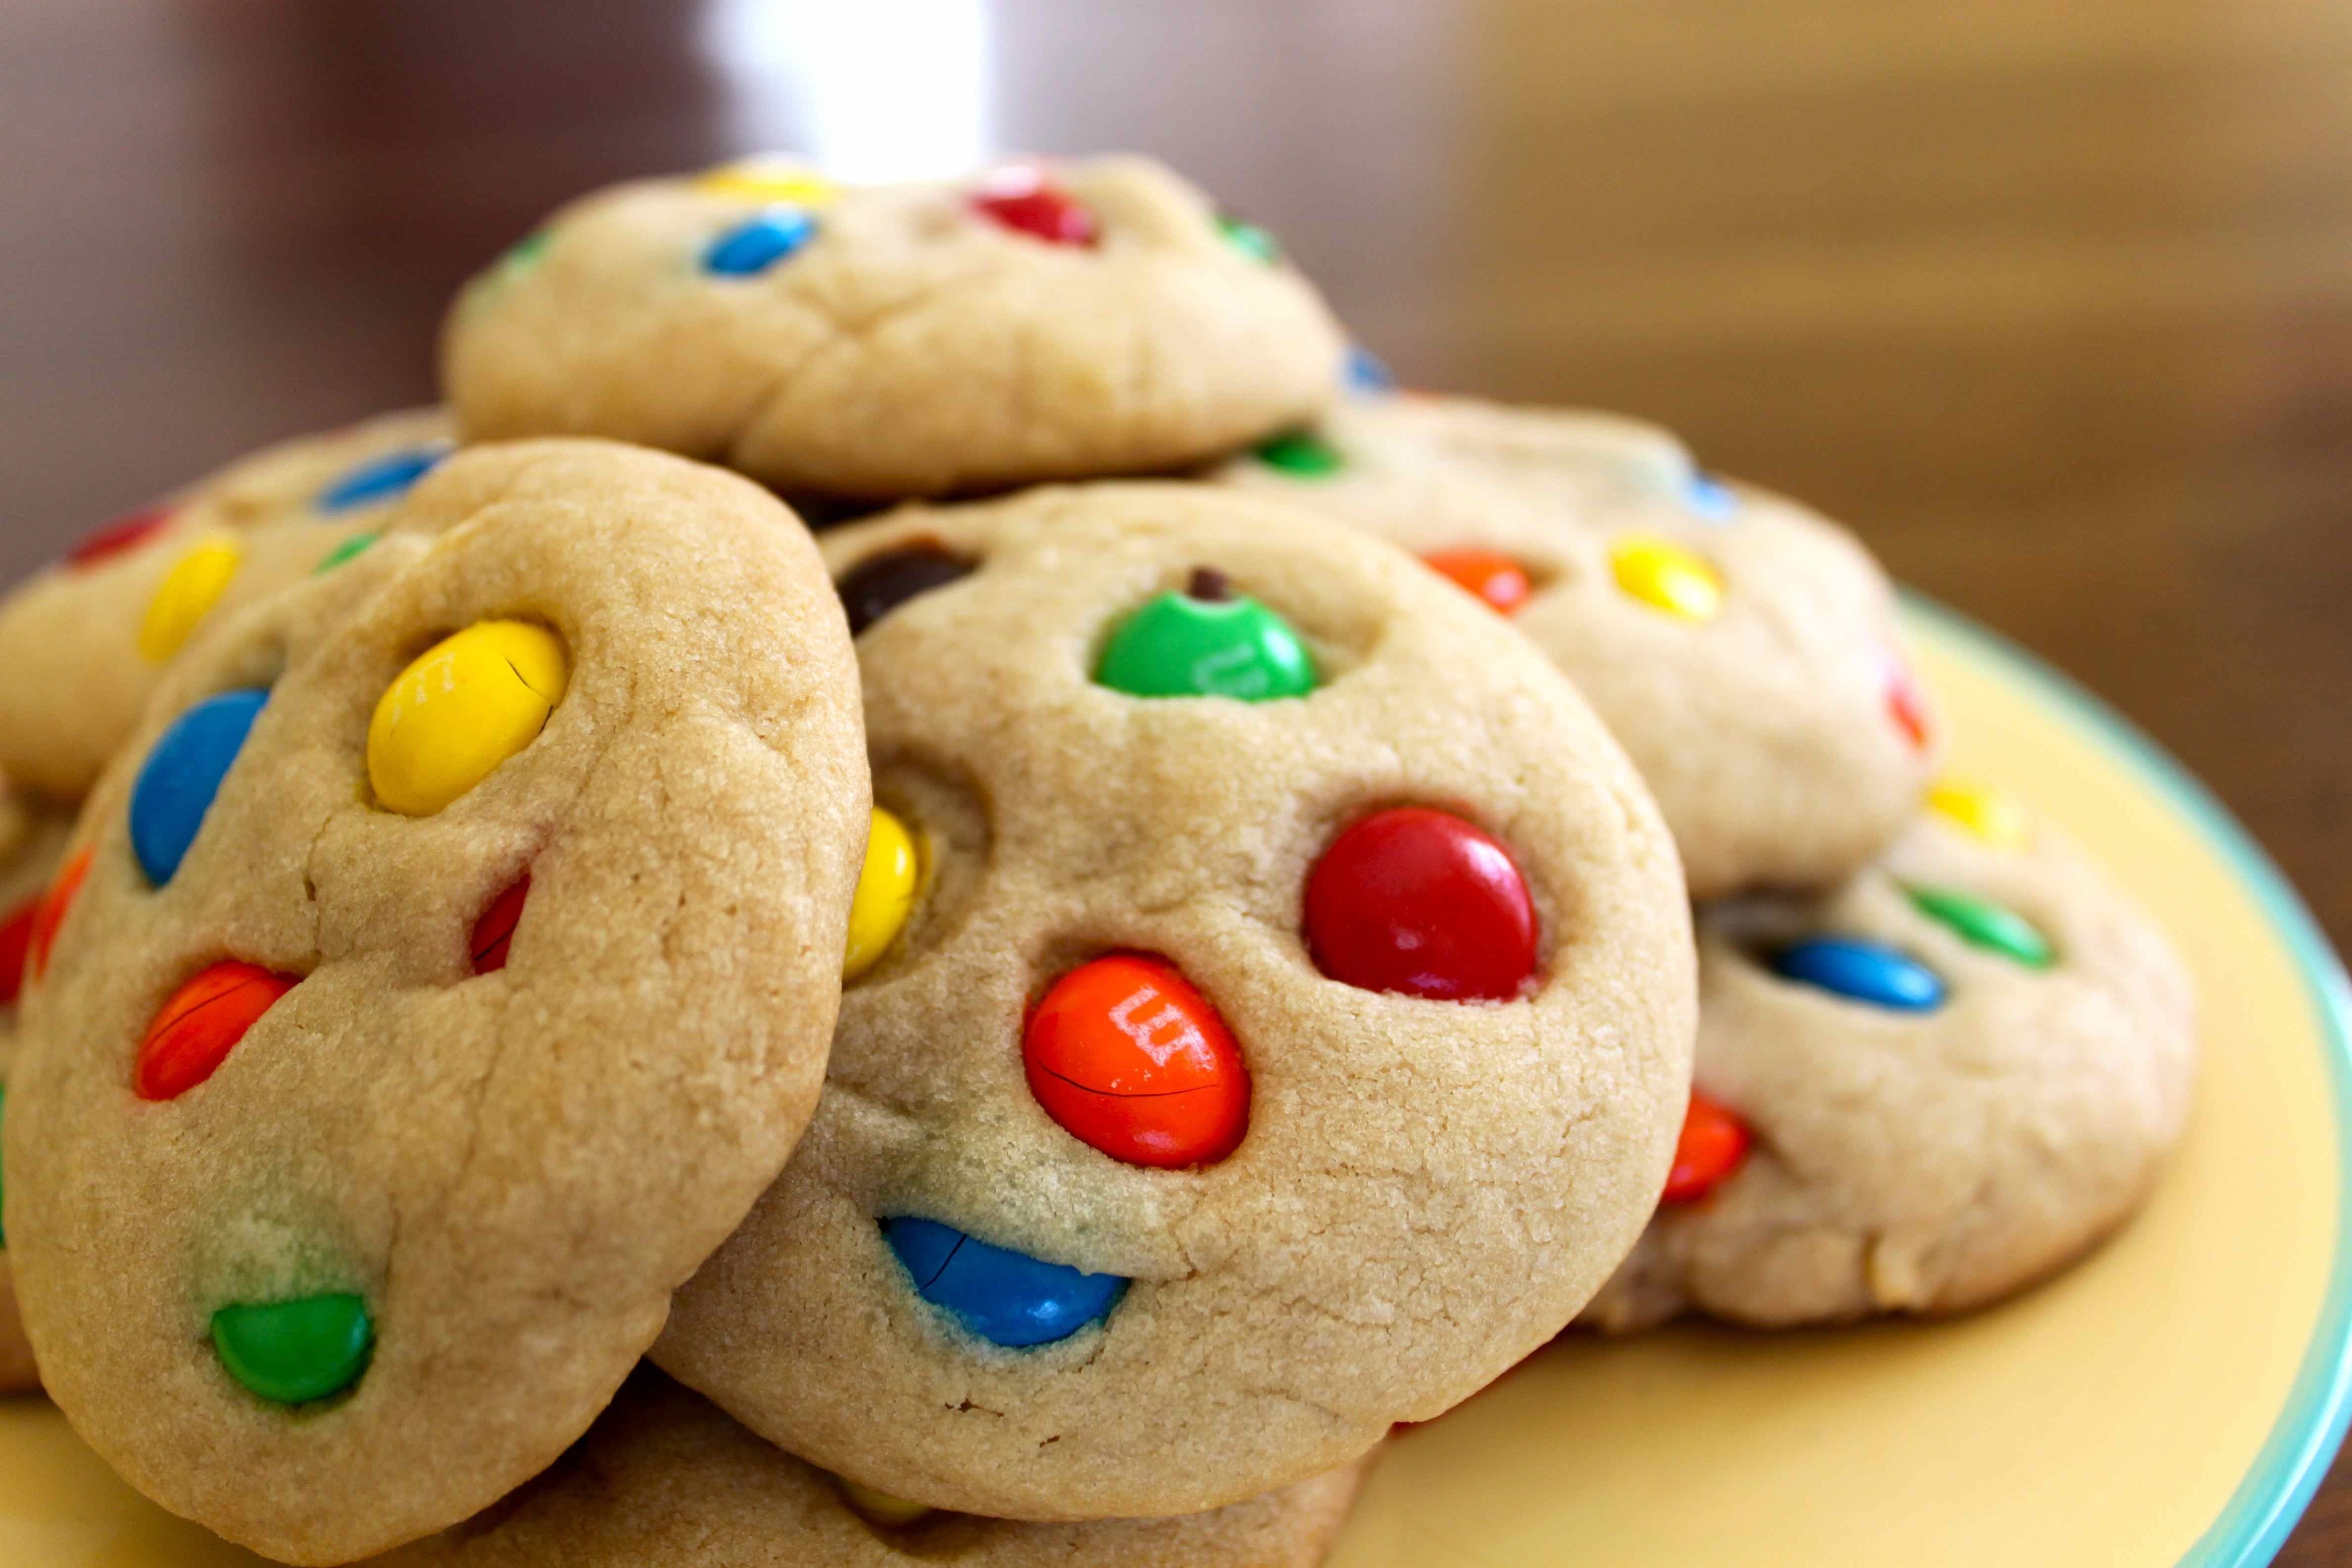 Content cookies